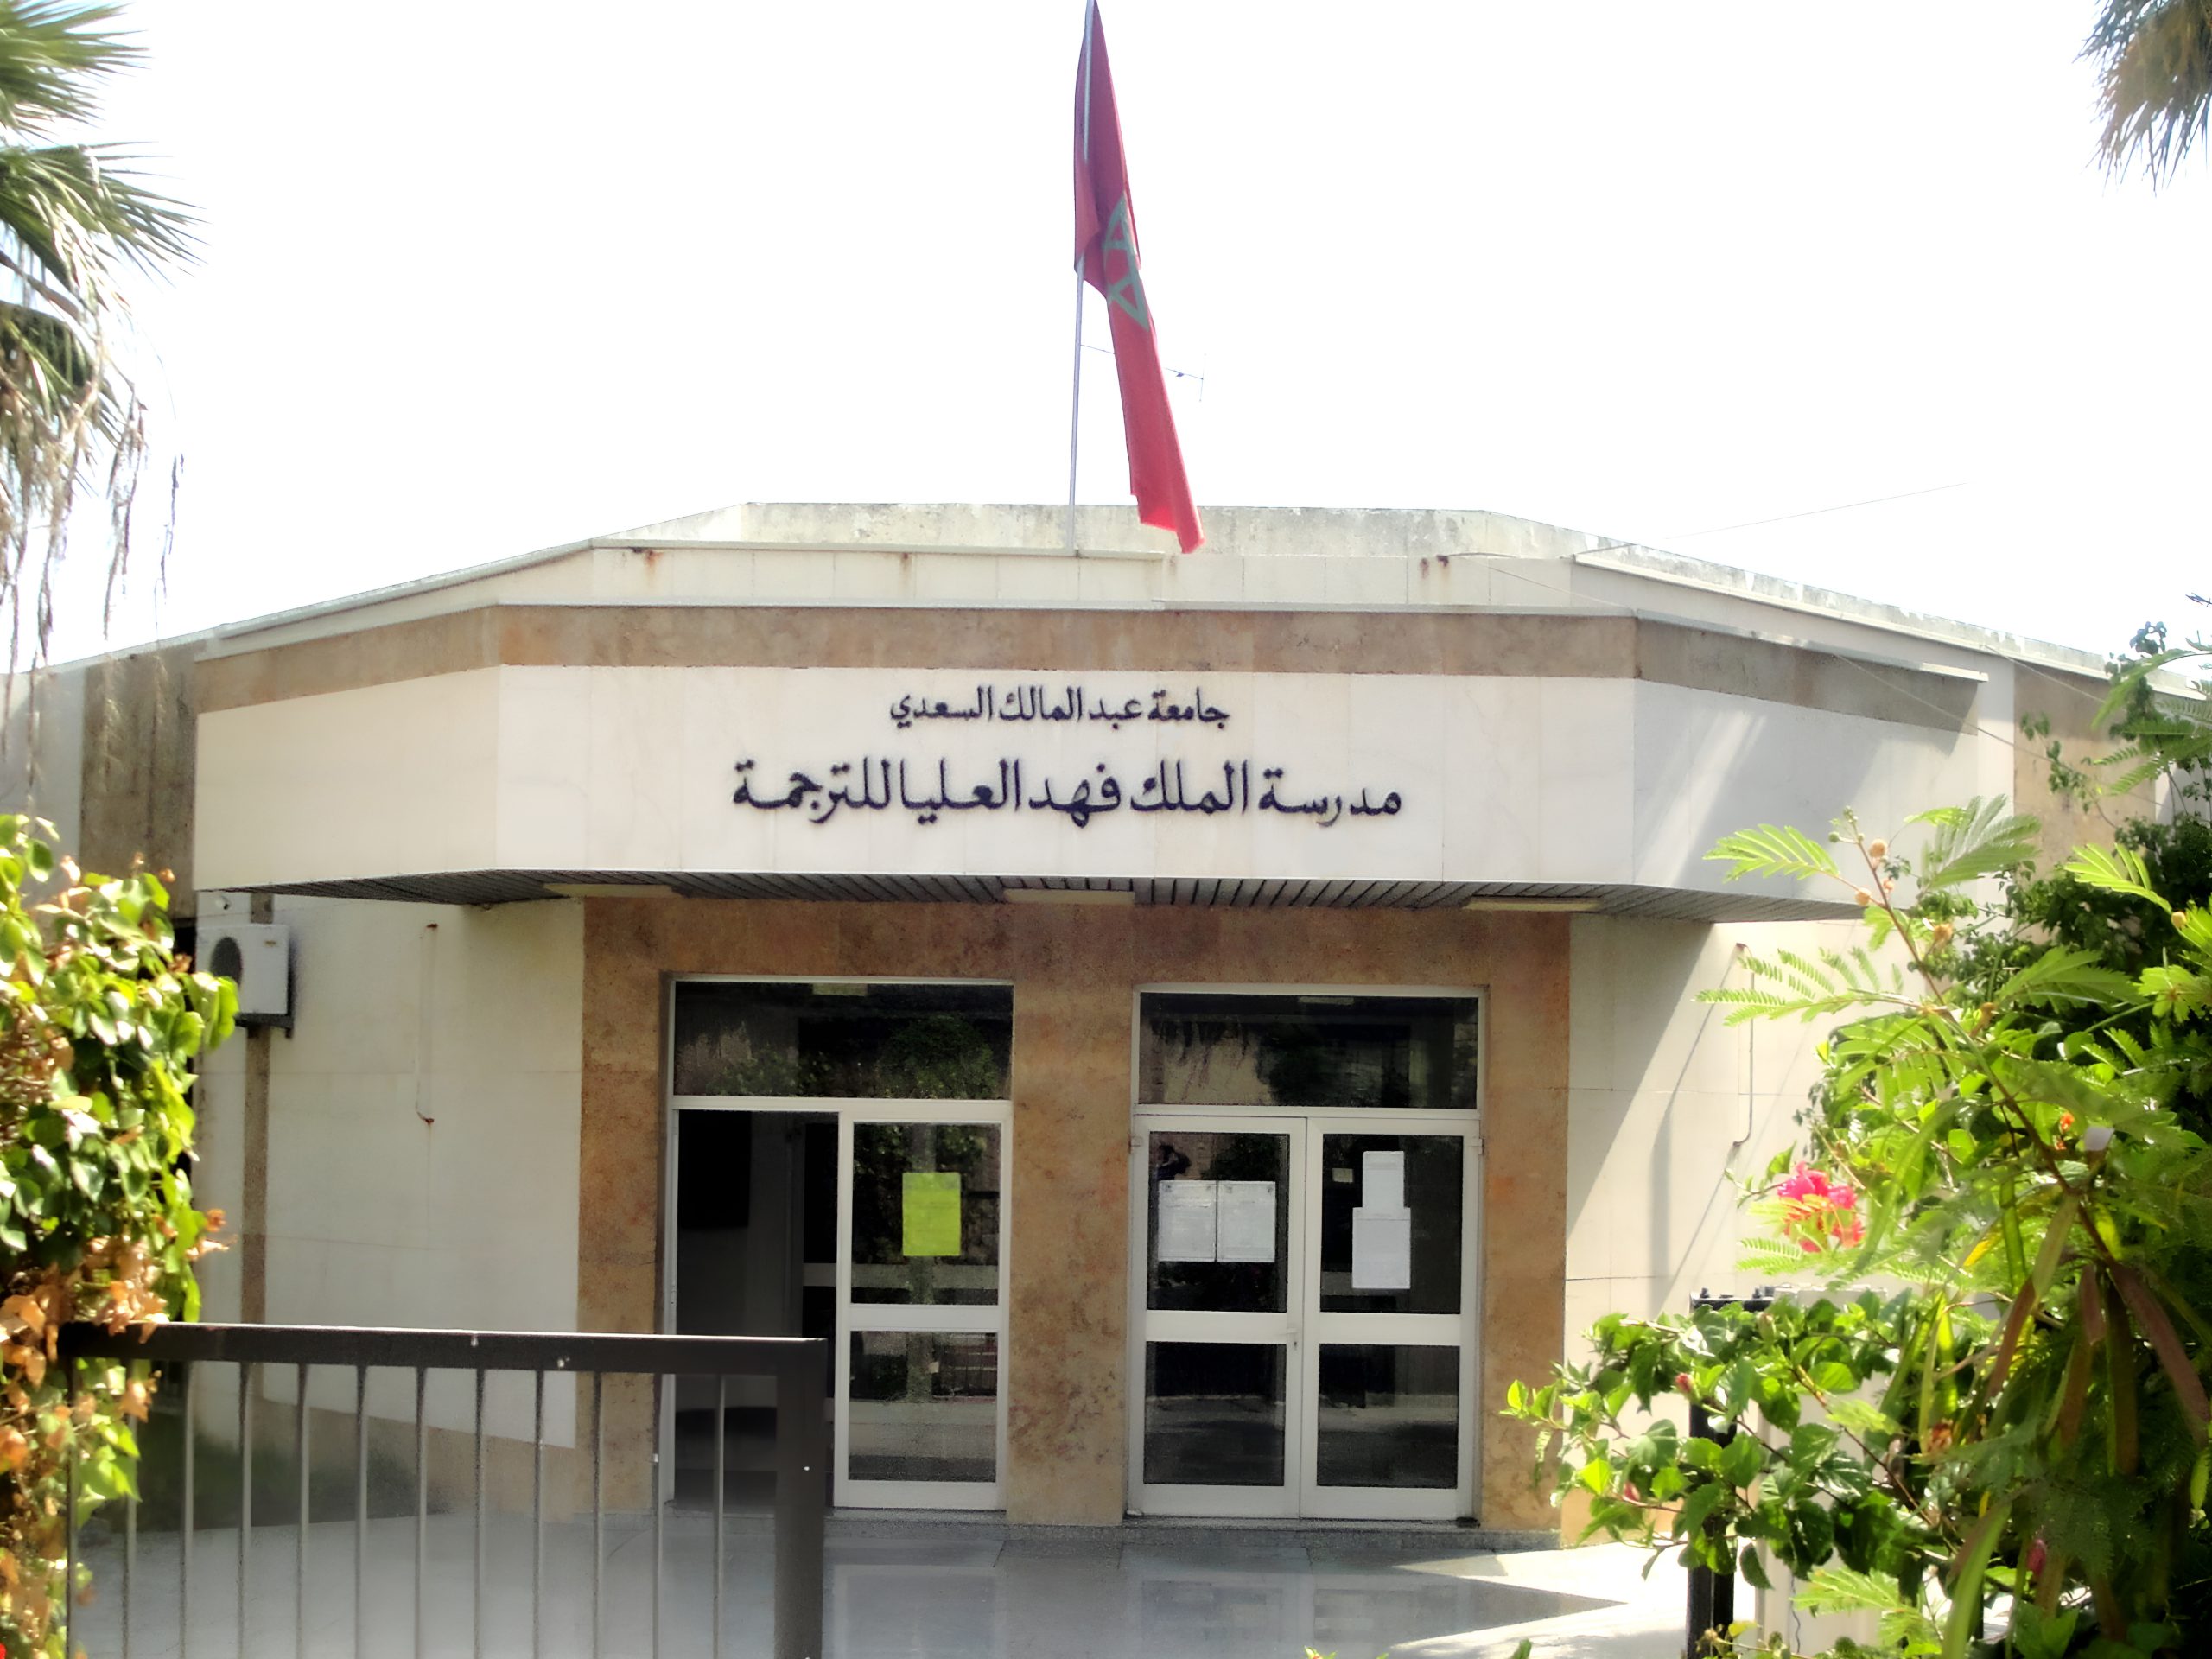 اتهامات بالغطرسة واستهداف الأساتذة تلاحق إدارة مدرسة الملك فهد للترجمة